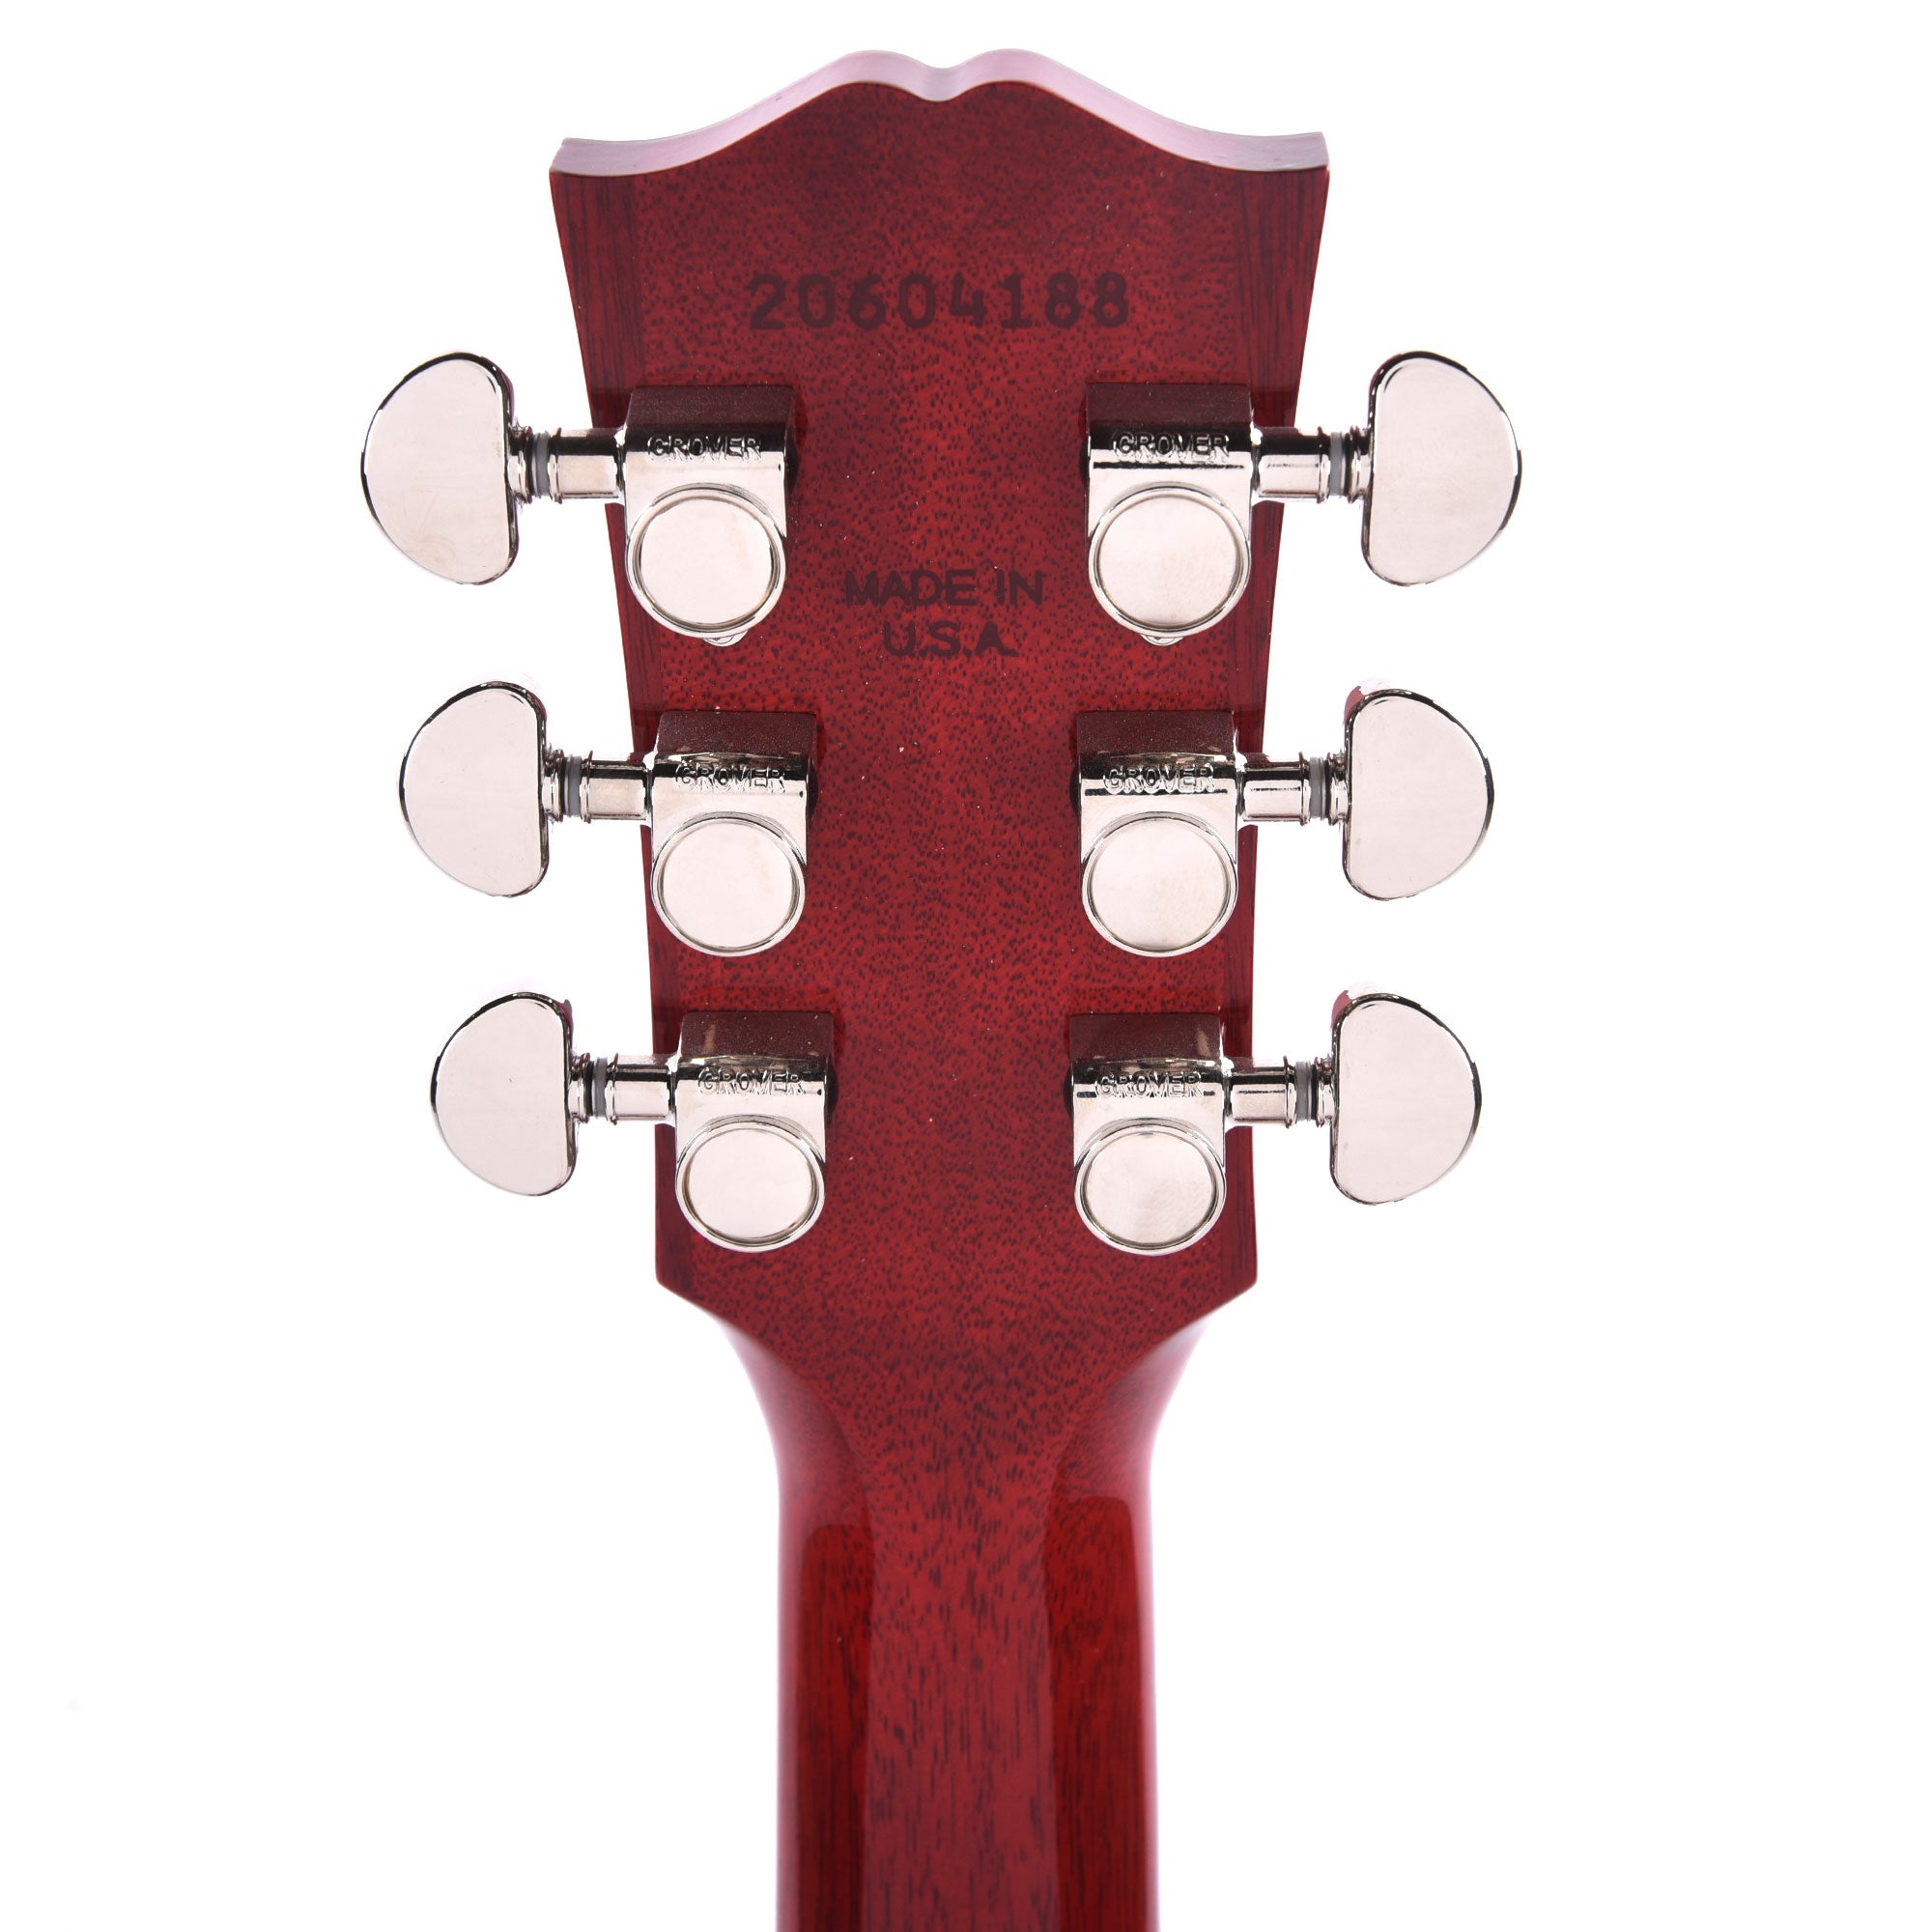 Gibson Modern J-45 Standard Cherry